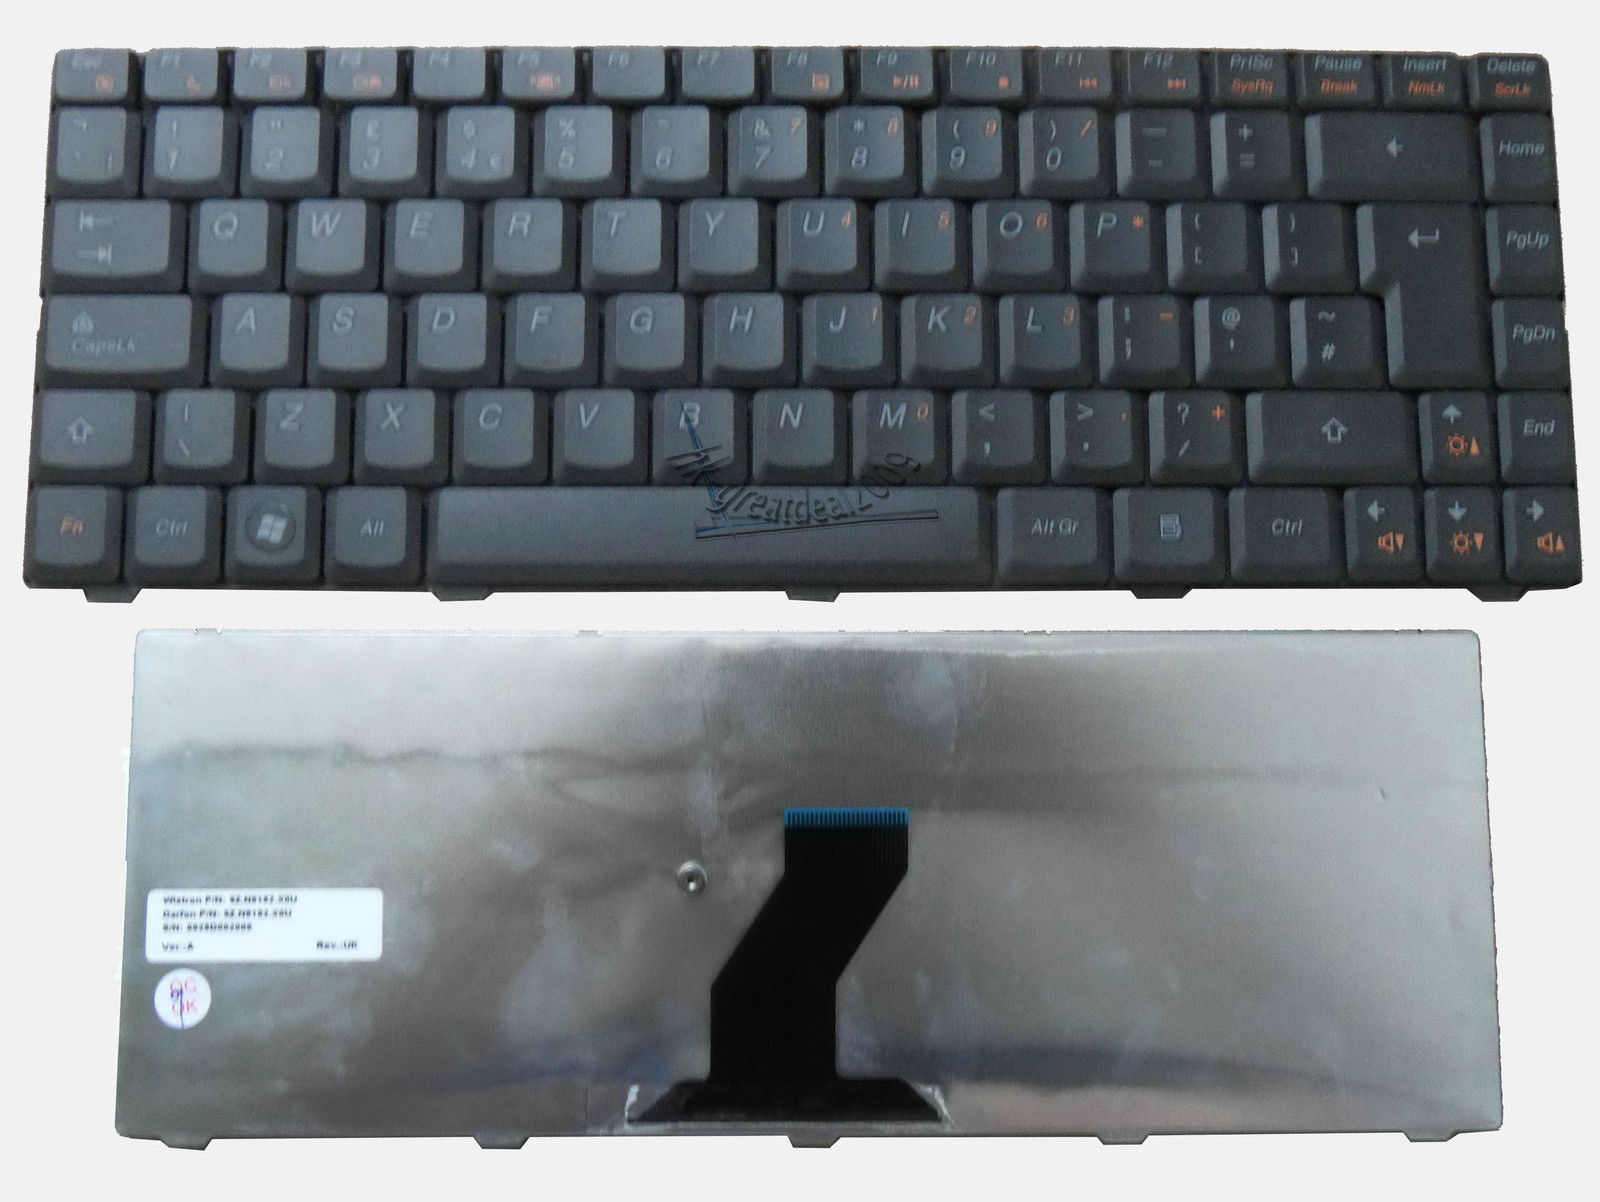 Bàn Phím - Keyboard Laptop Lenovo Ideapad B450